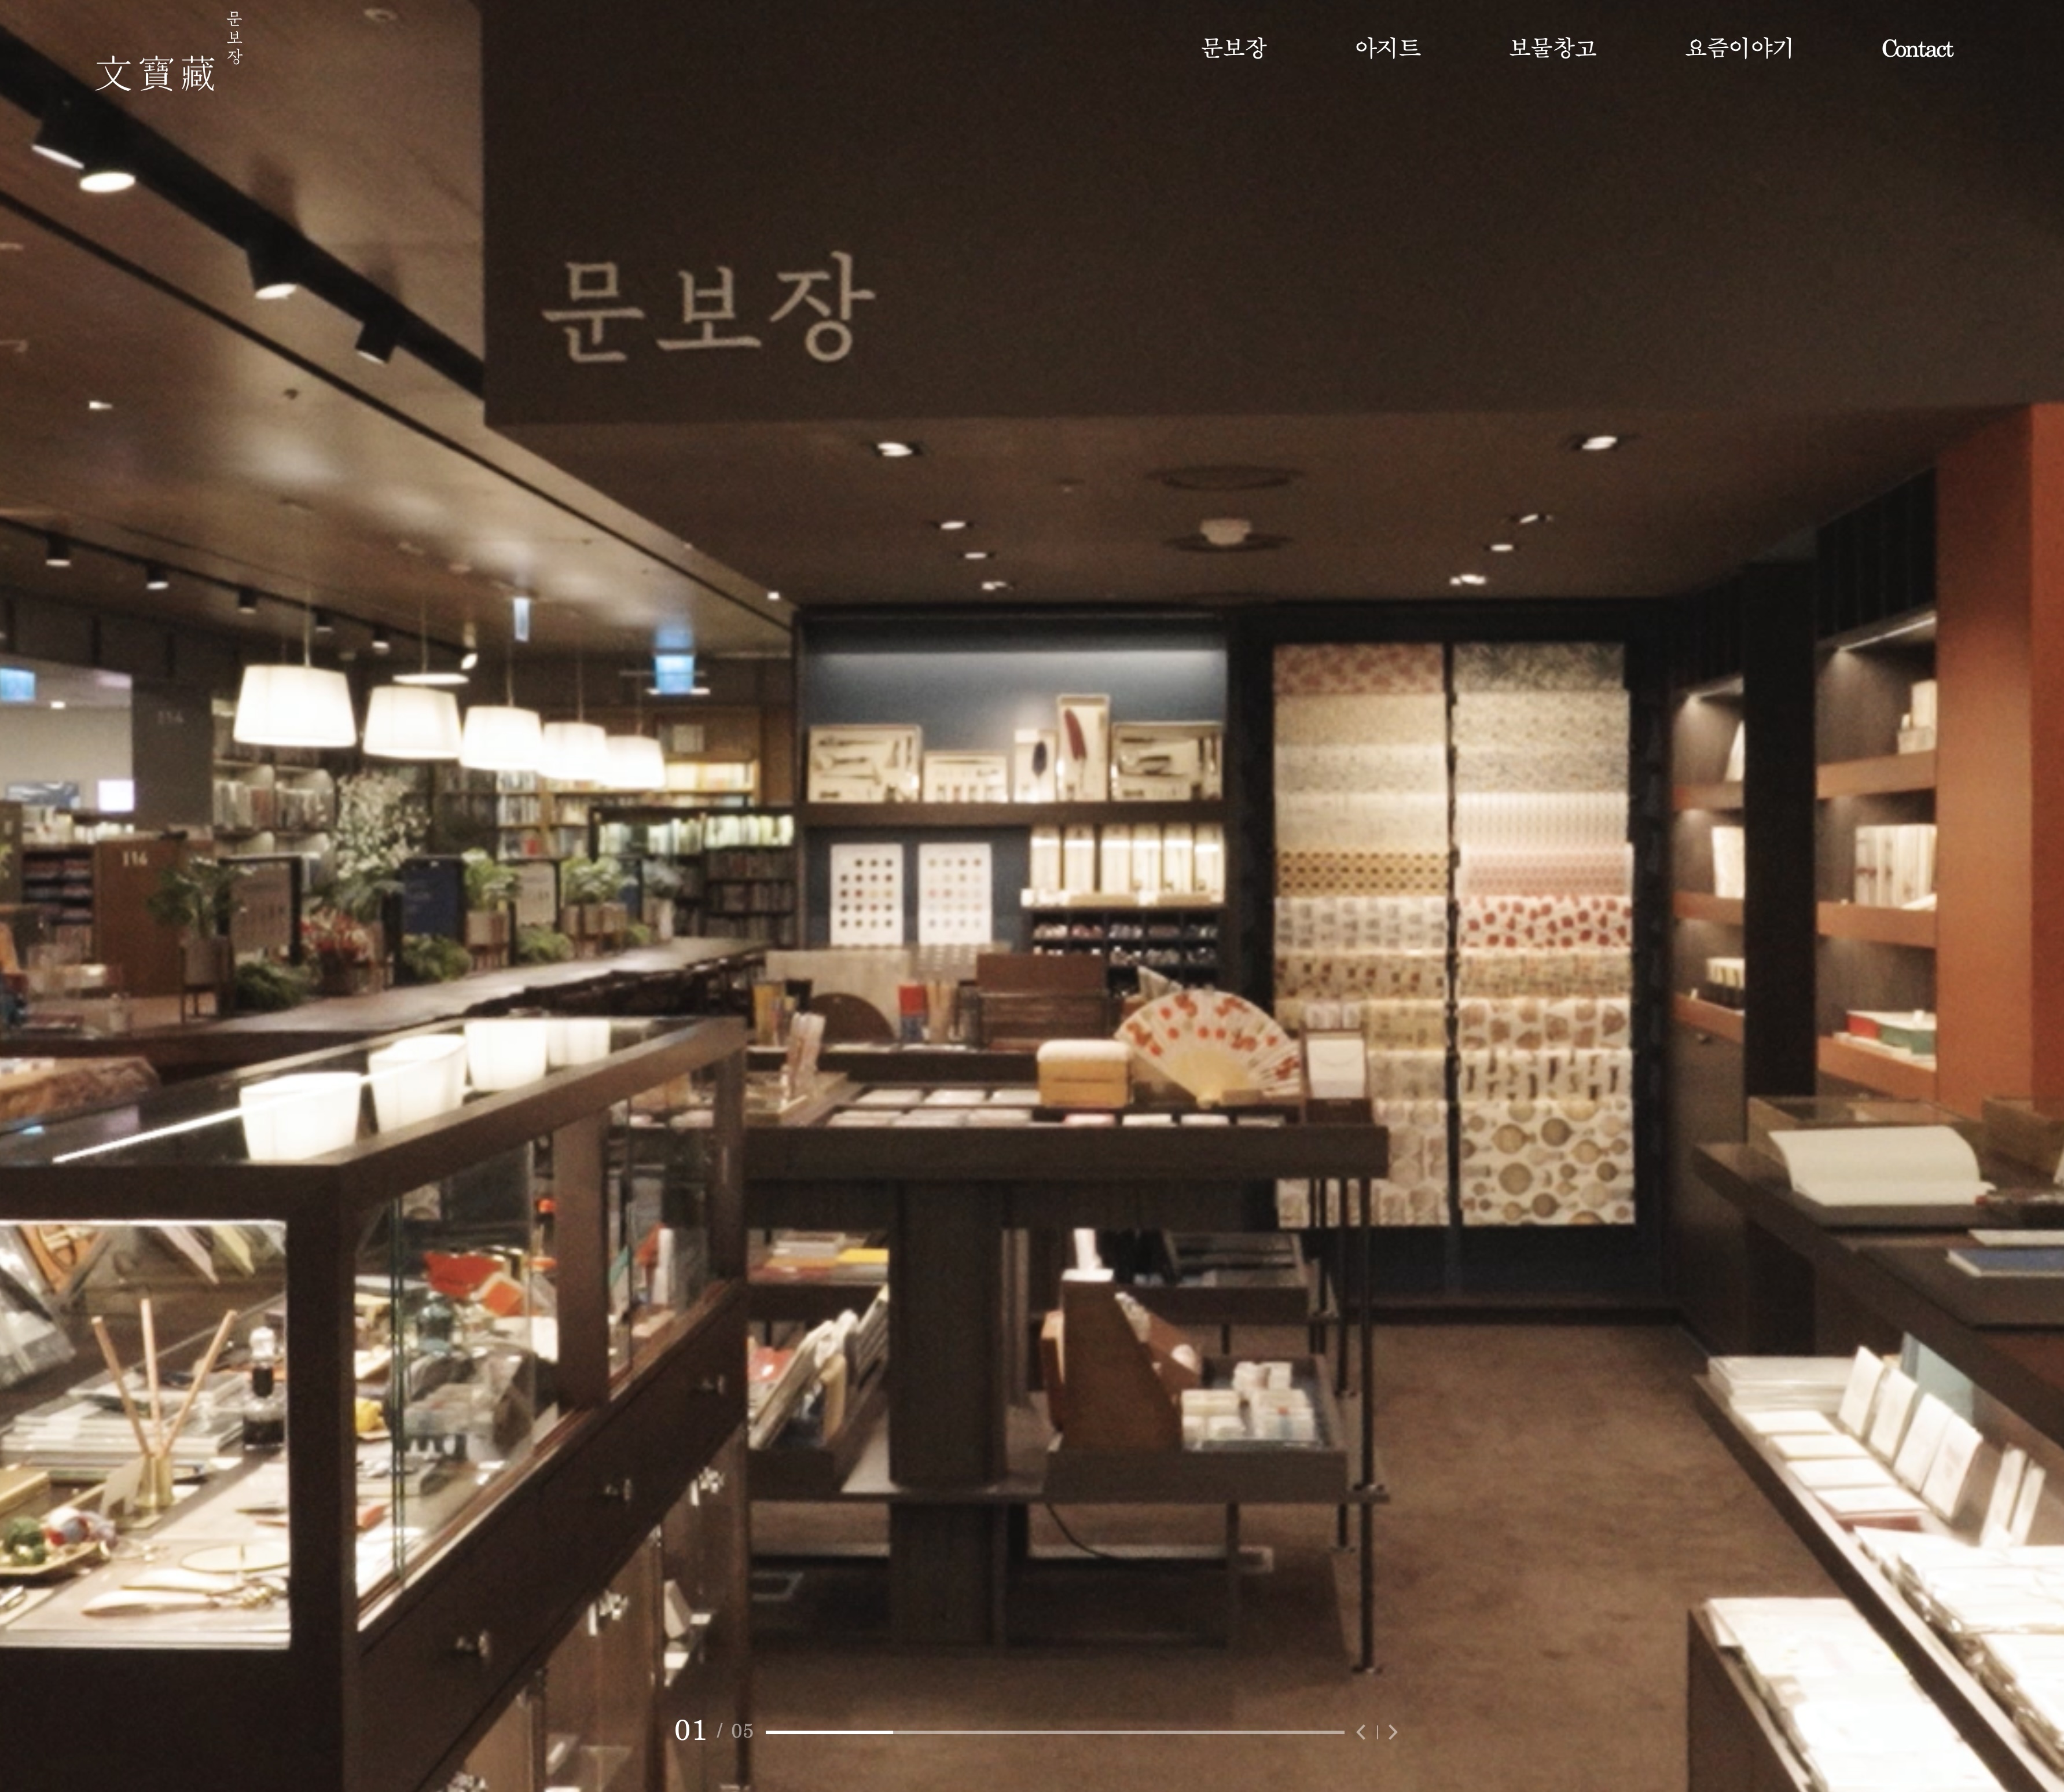 韓国ソウルの高級文具店Munbojang様での取り扱いが始まりました。